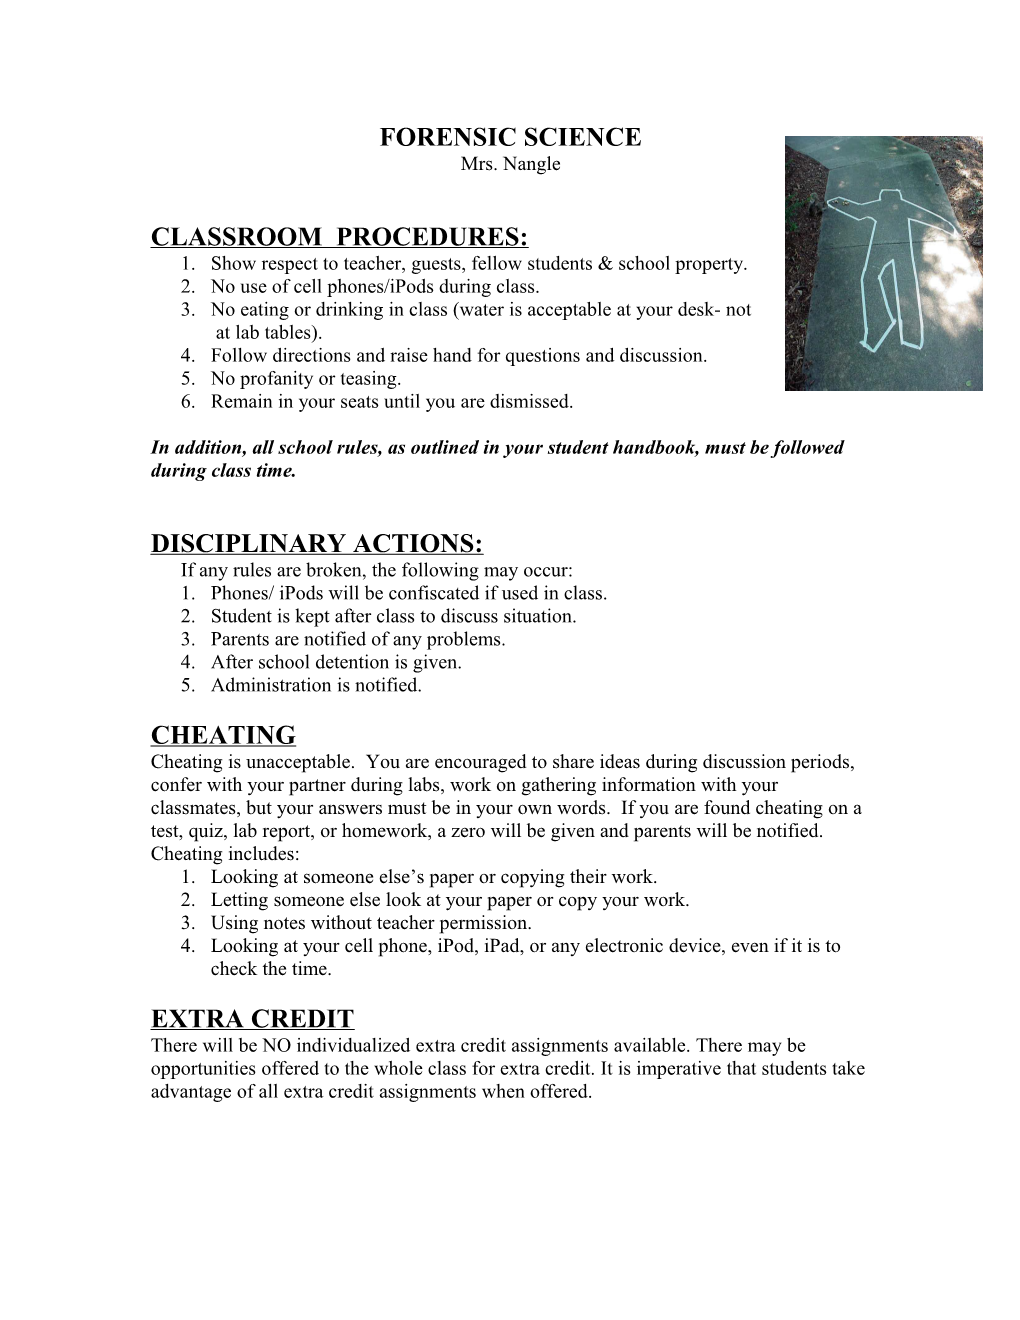 Classroom Procedures s1